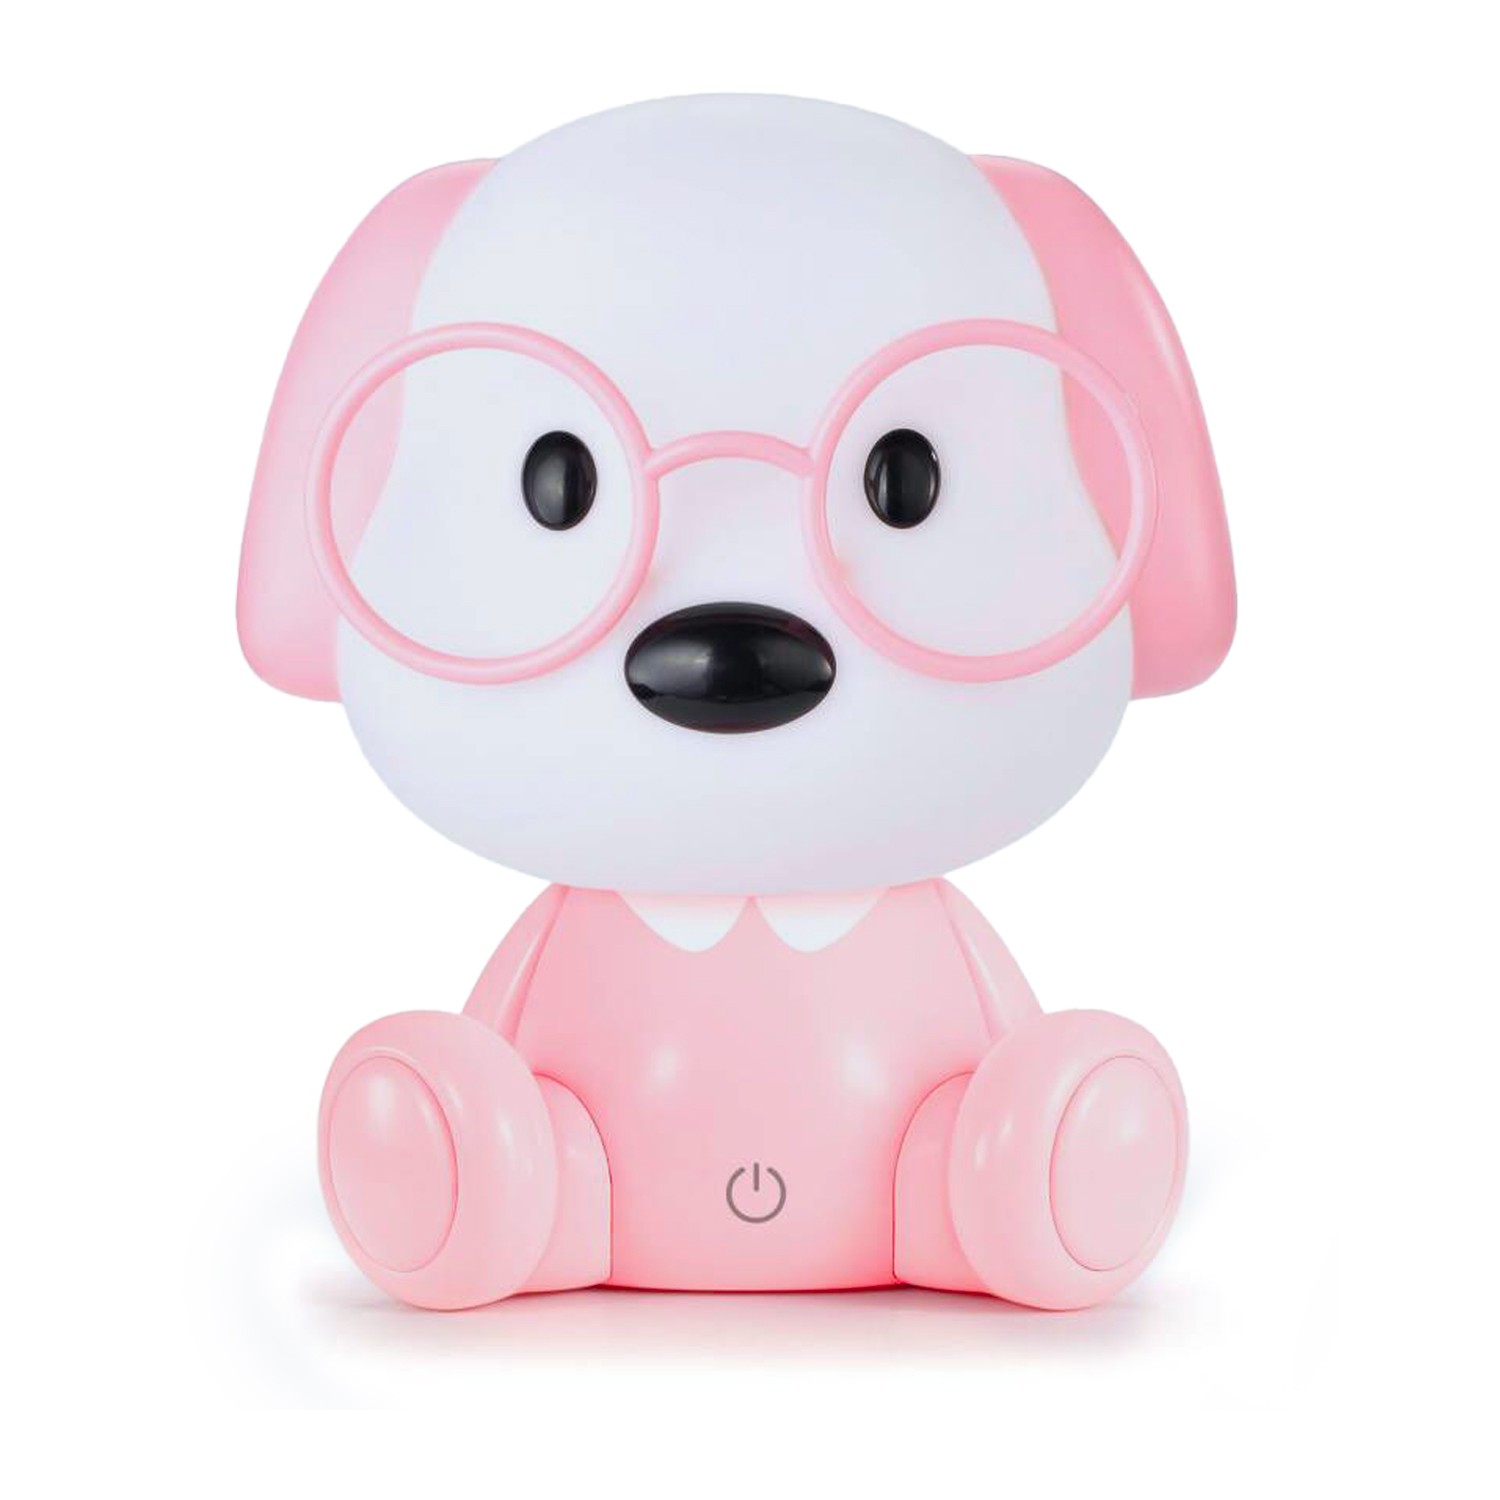 35597-lampara-led-infantil-doggy-rosa.jfif